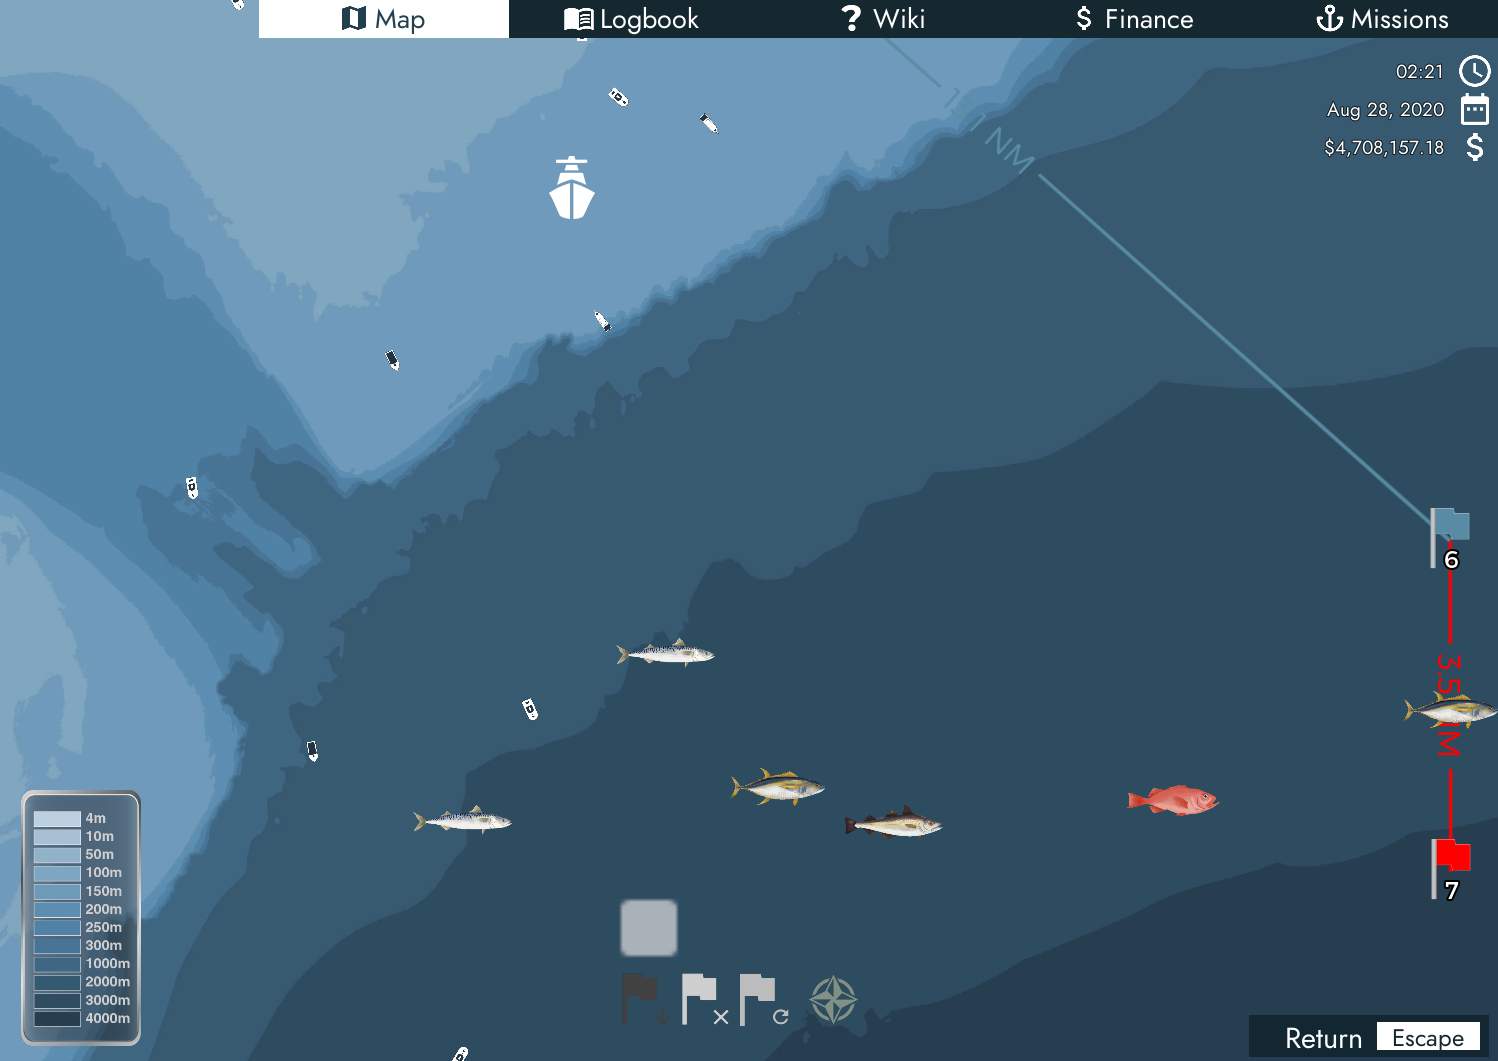 Atlantic Ocean Fishing Map 